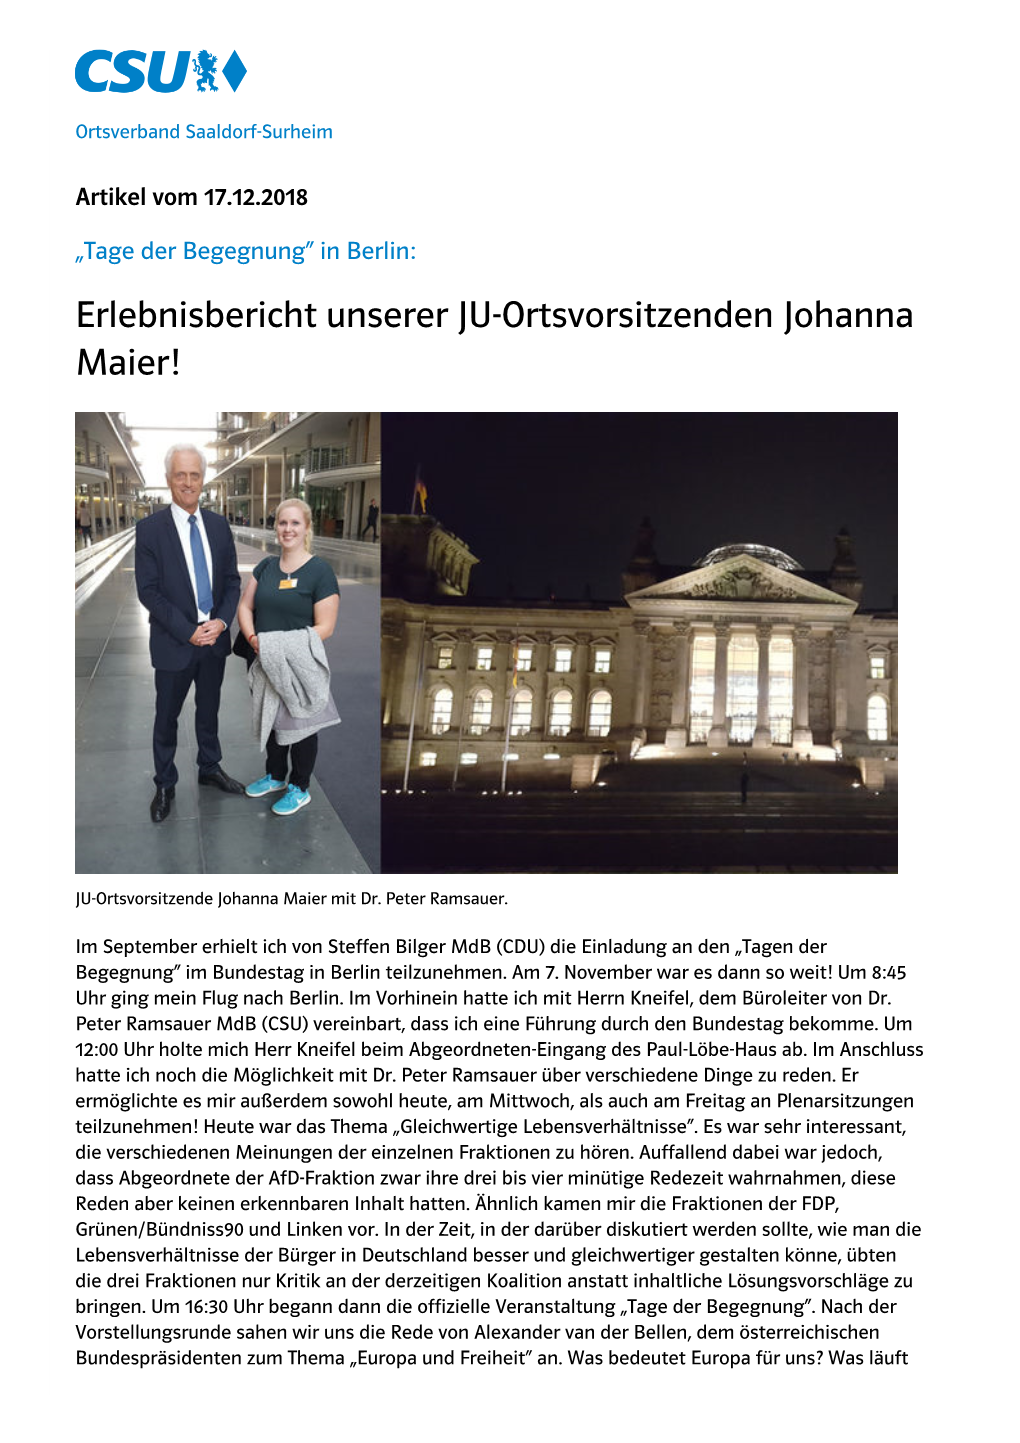 Tage Der Begegnung“ in Berlin: Erlebnisbericht Unserer JU-Ortsvorsitzenden Johanna Maier!